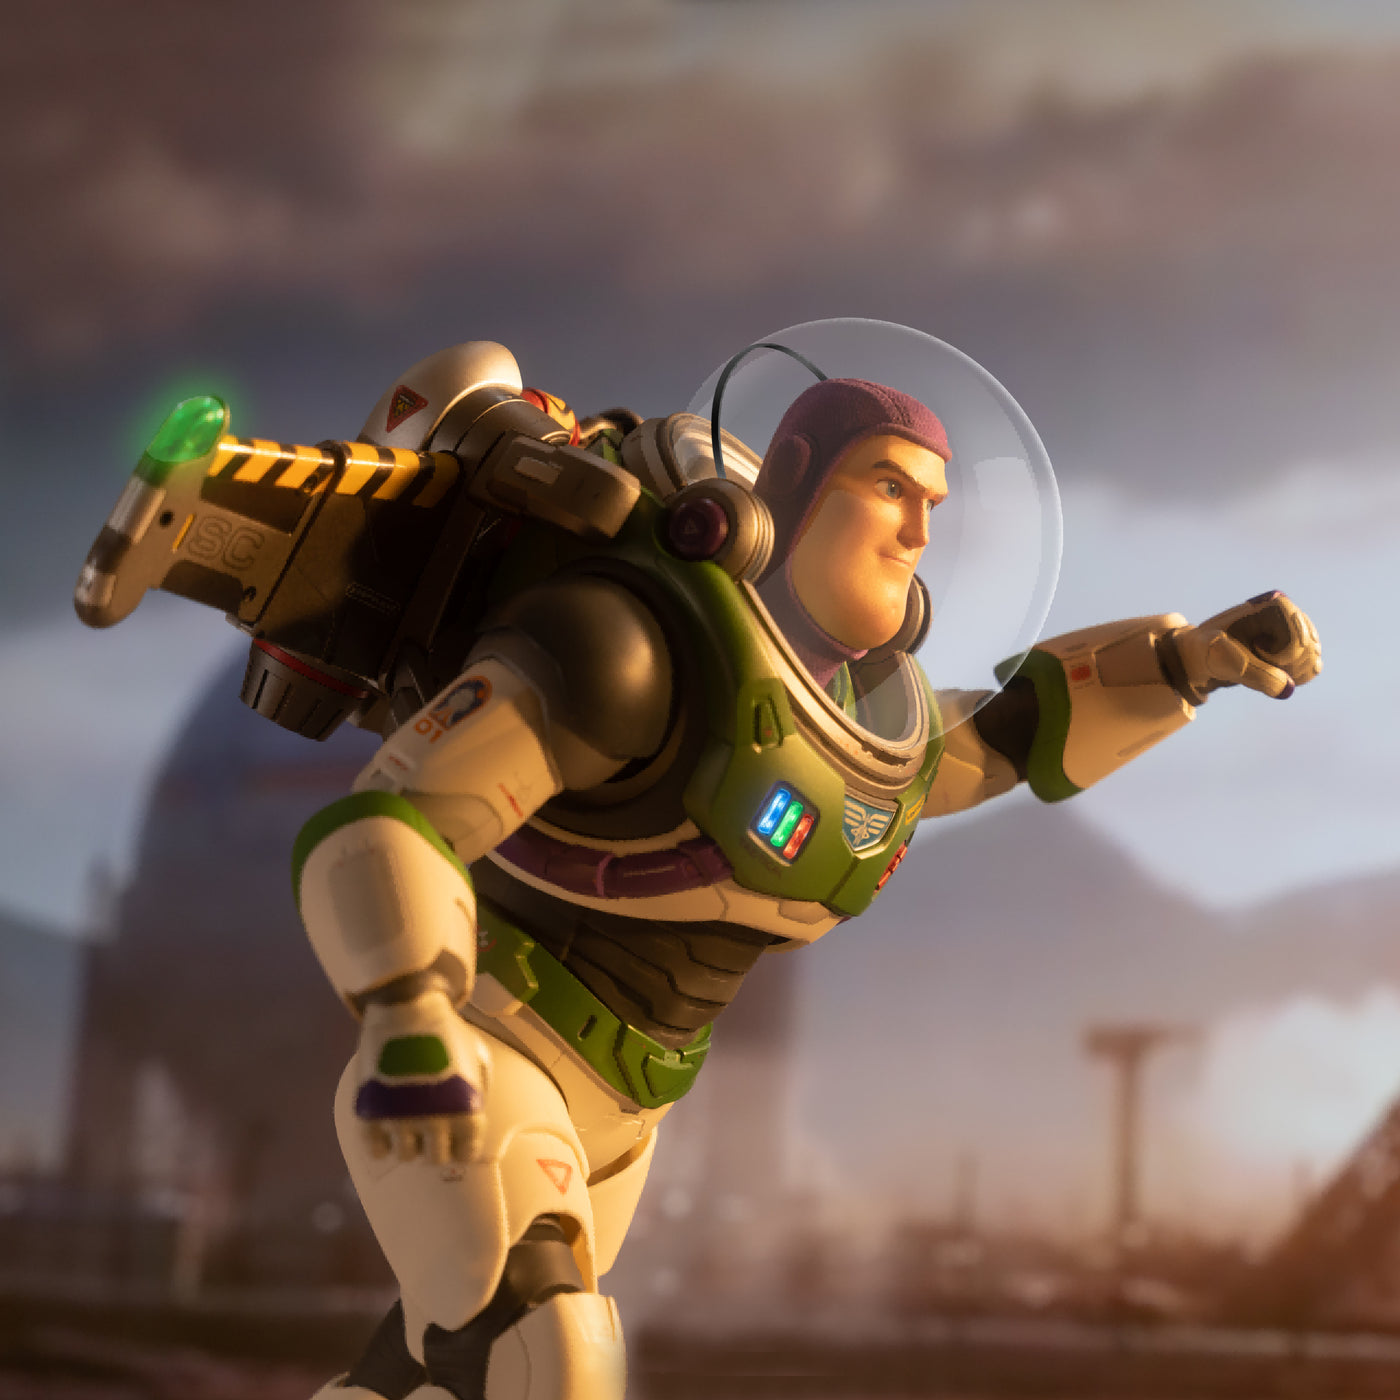 Buzz Lightyear Space Ranger Alpha